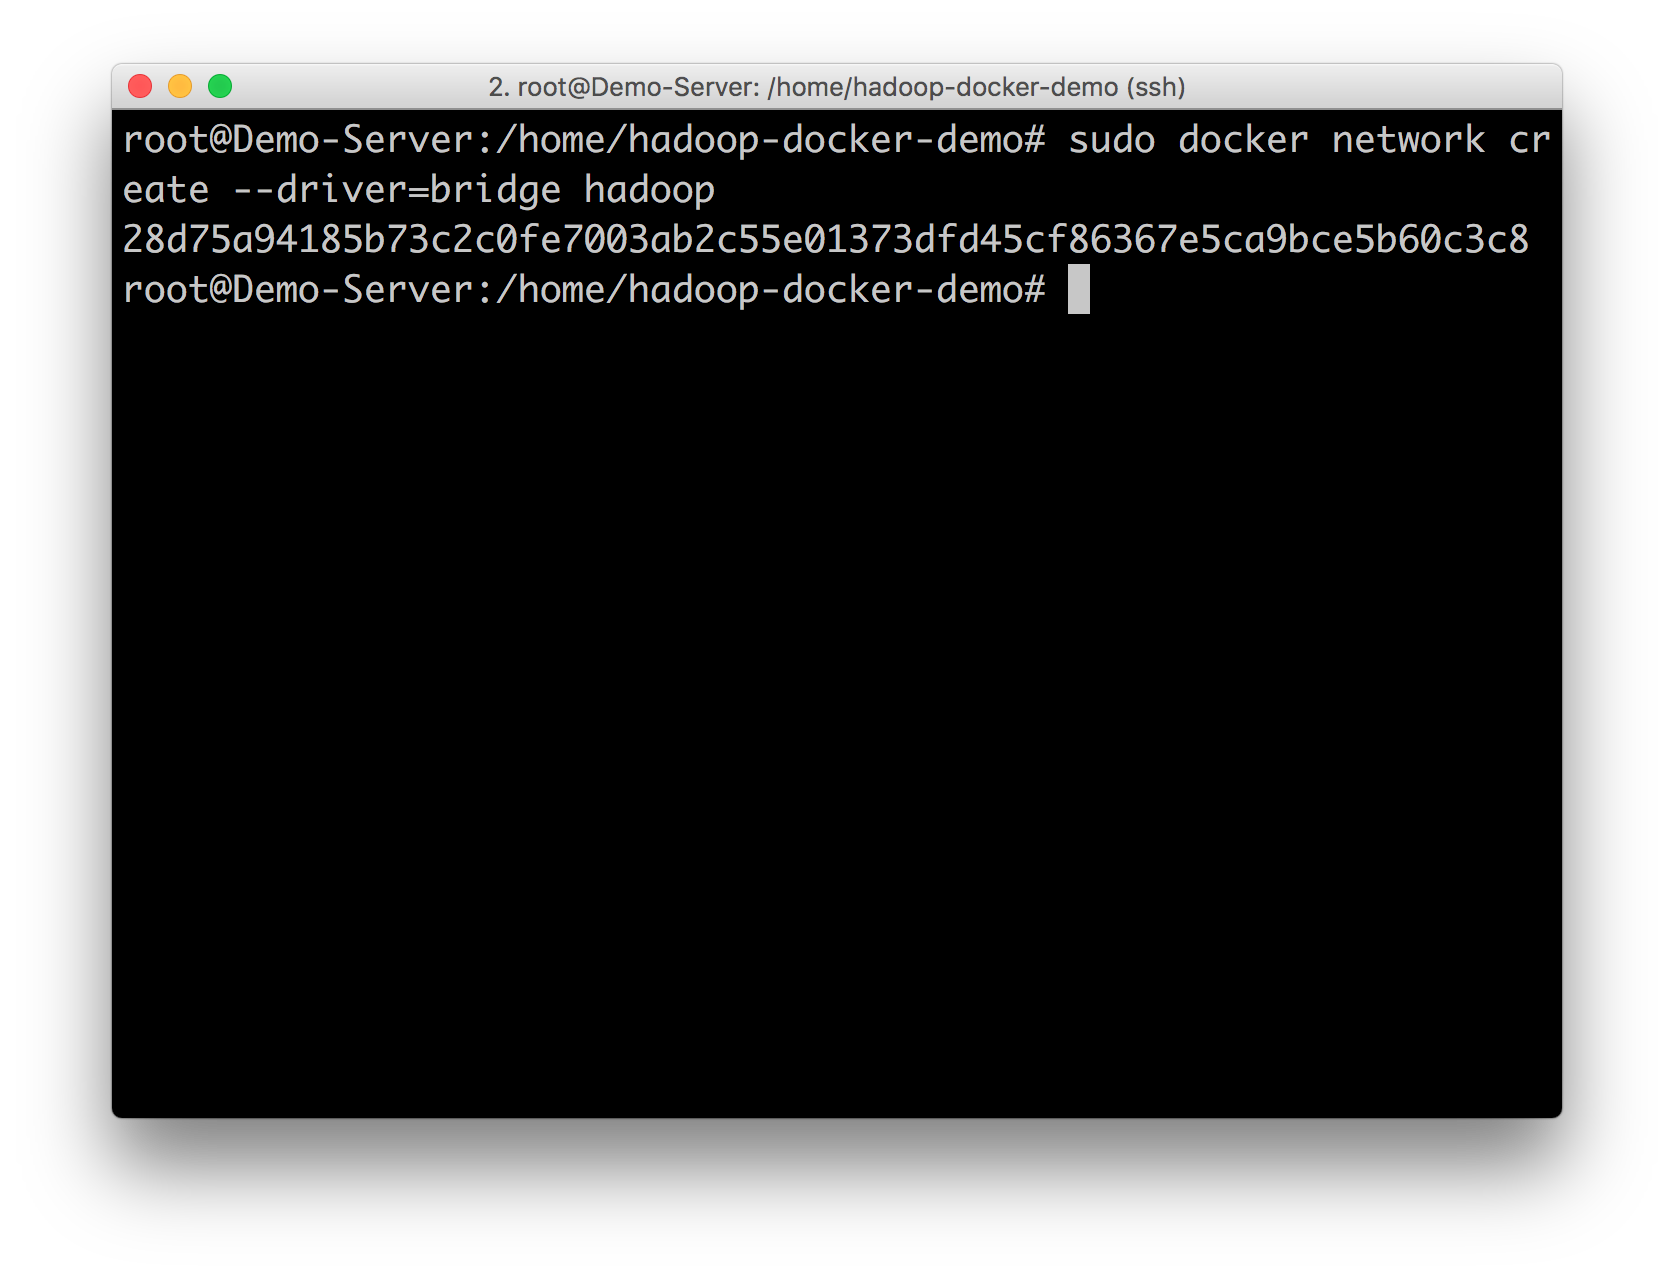 详解从 0 开始使用 Docker 快速搭建 Hadoop 集群环境